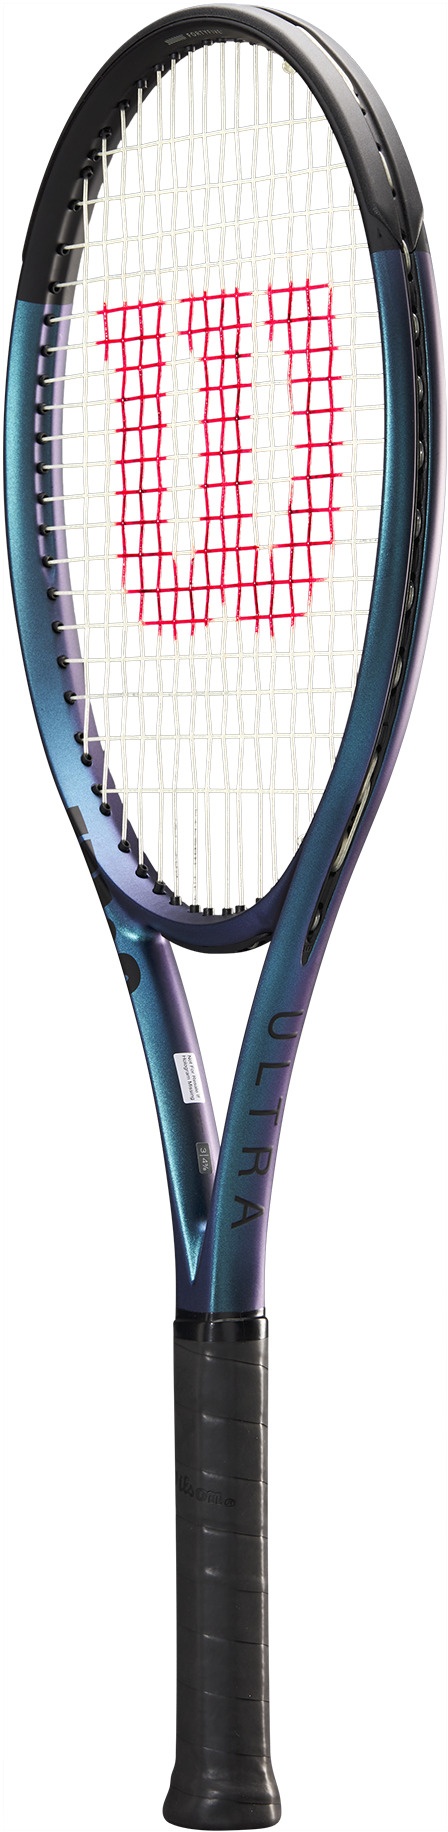 Performance tennis racquet